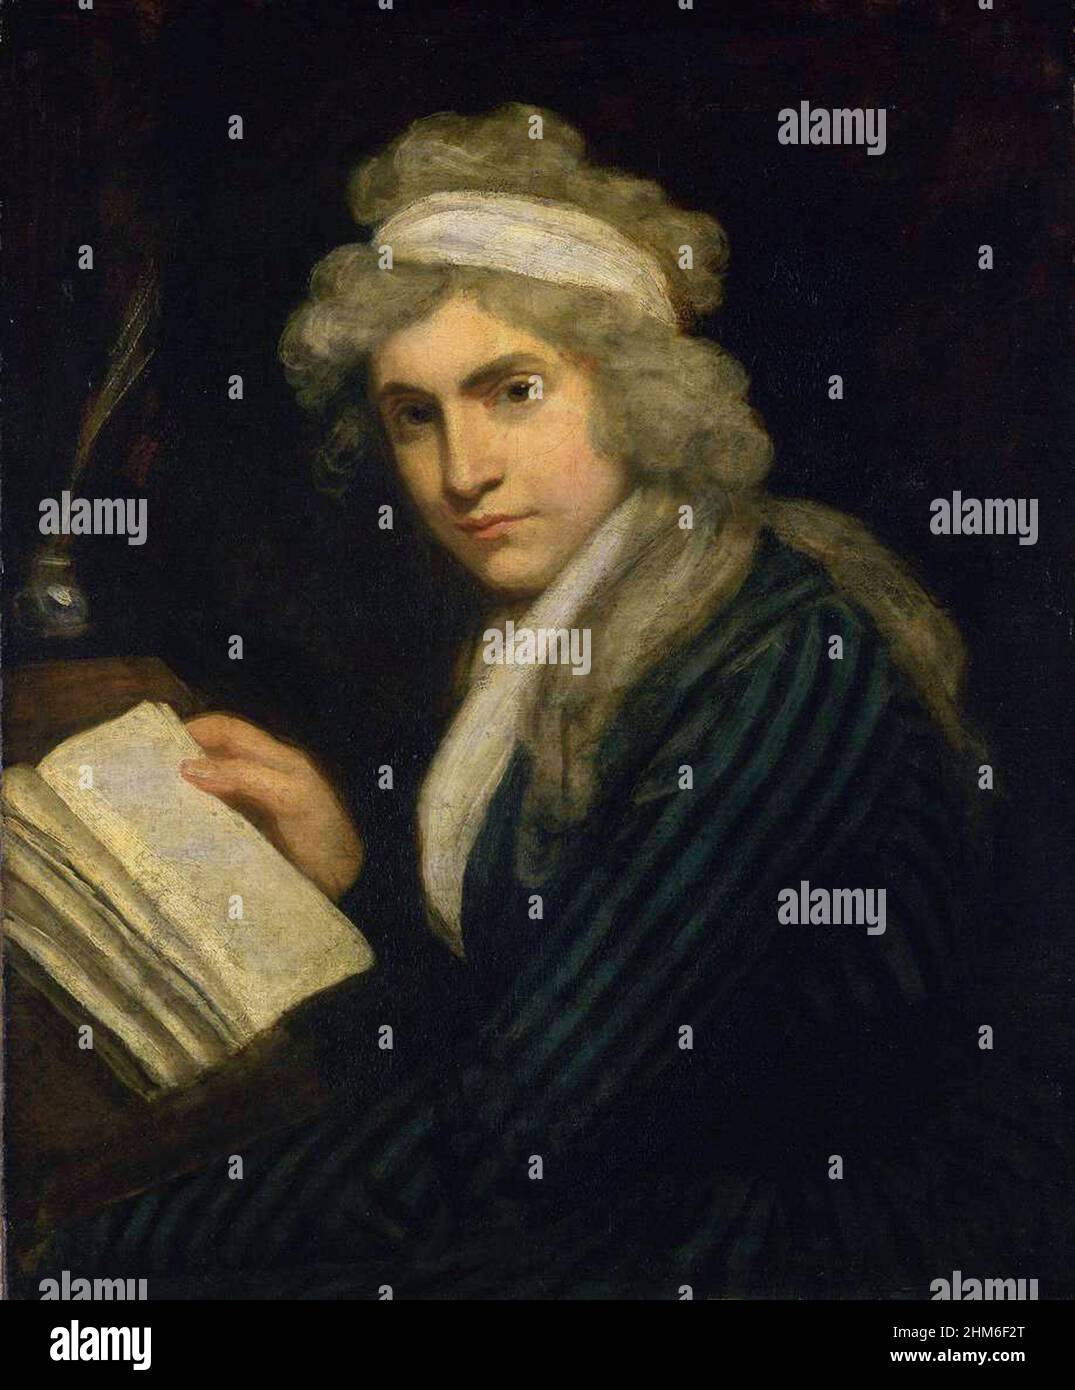 Ritratto della scrittrice inglese Mary Wollstonecraft, madre di Mary Shelley, autrice di Frankenstein. Il ritratto è del 1791 quando aveva 32 anni. Foto Stock